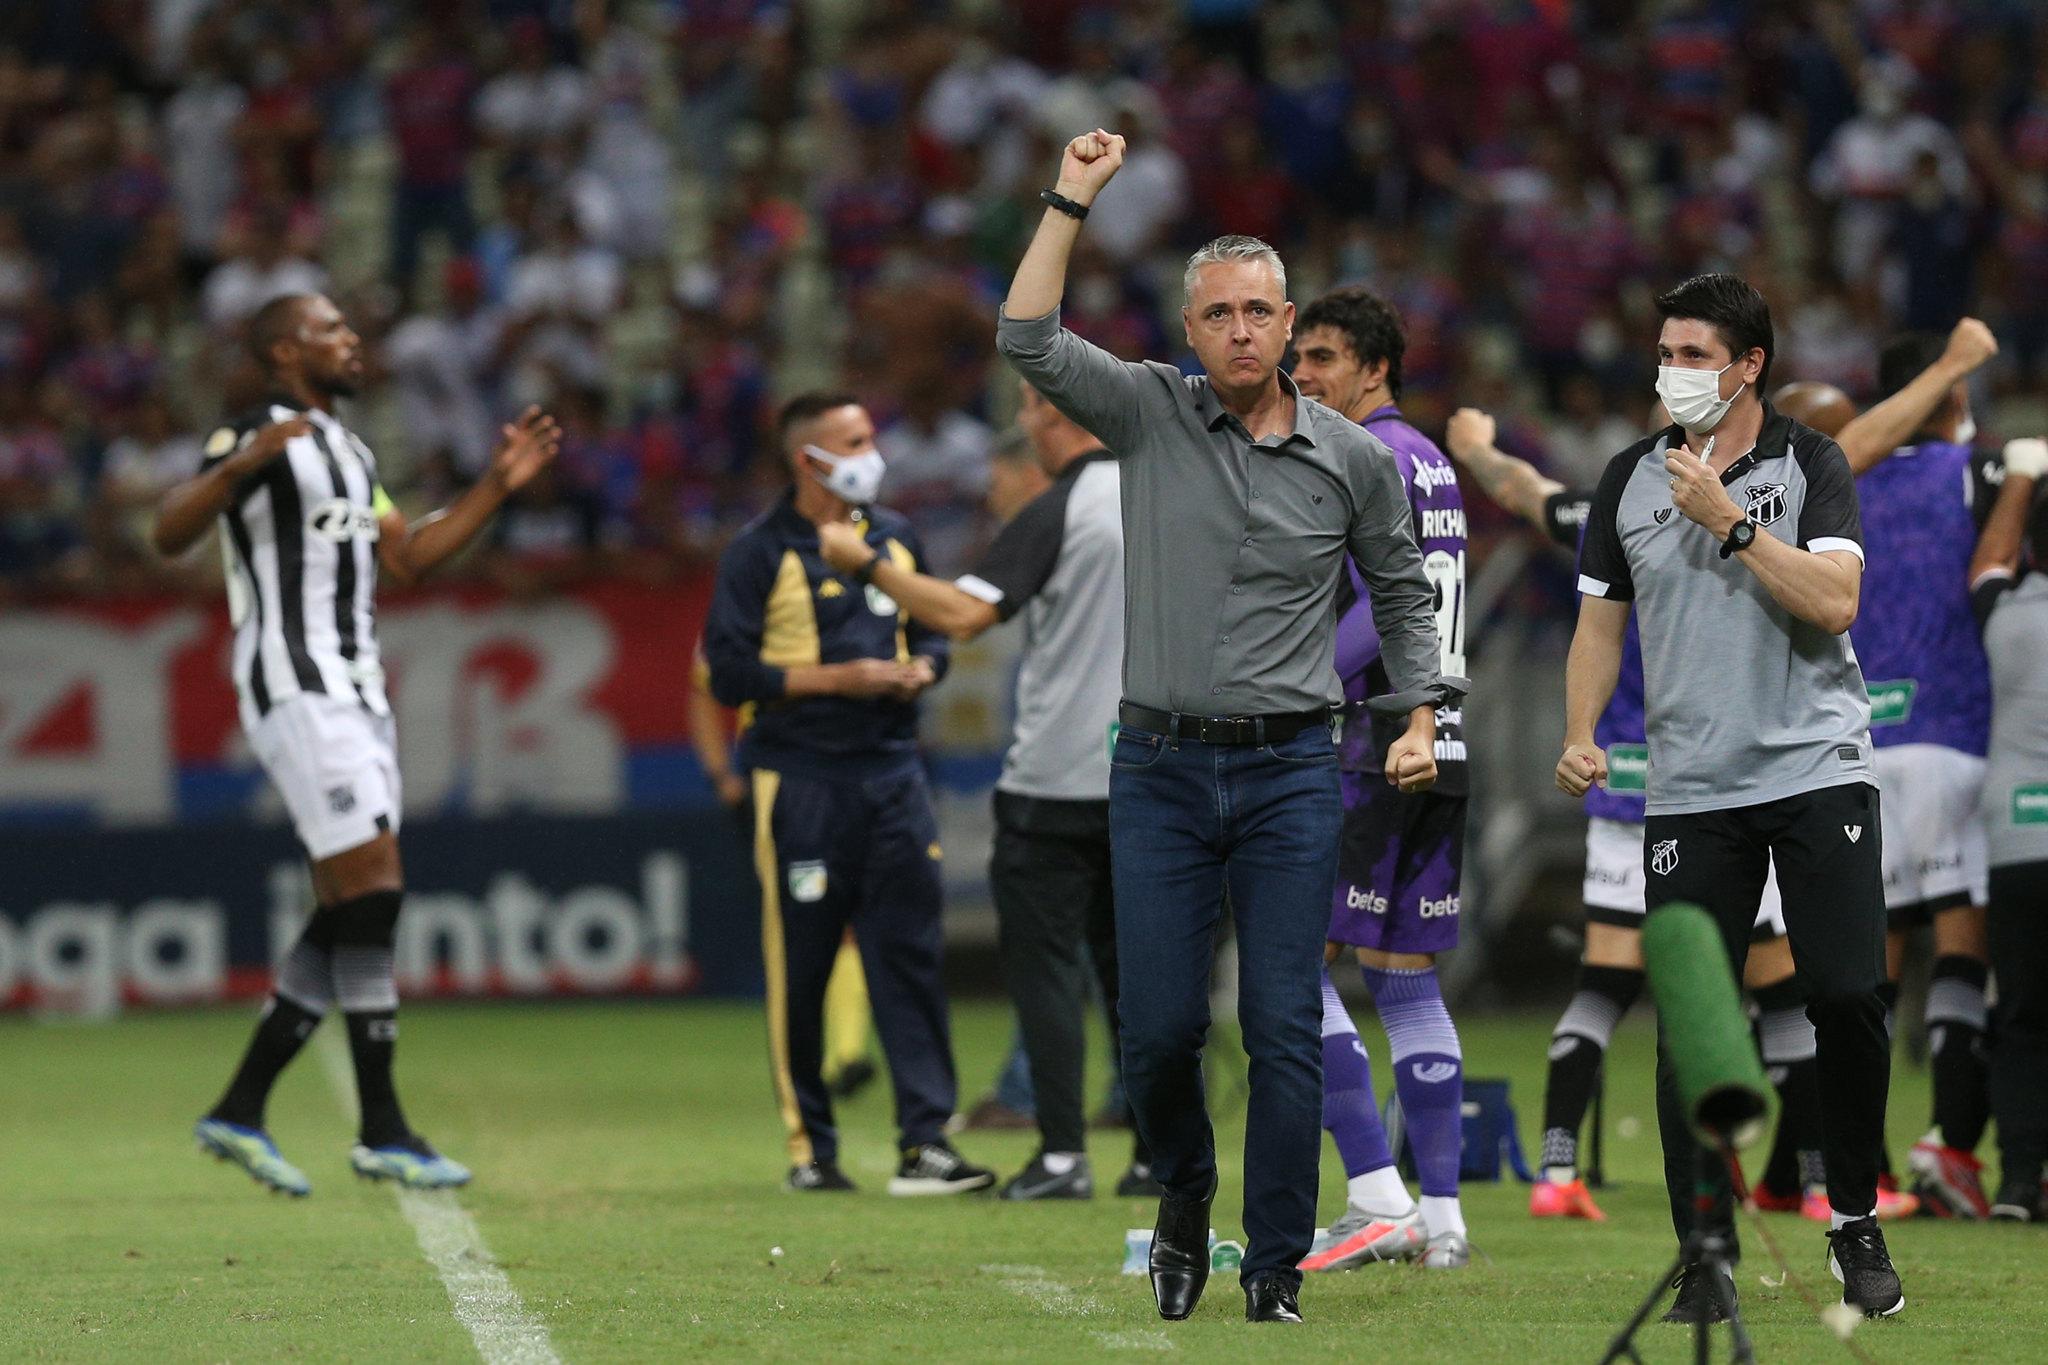 Tiago Nunes com a mão levantada comemorando gol do Ceará